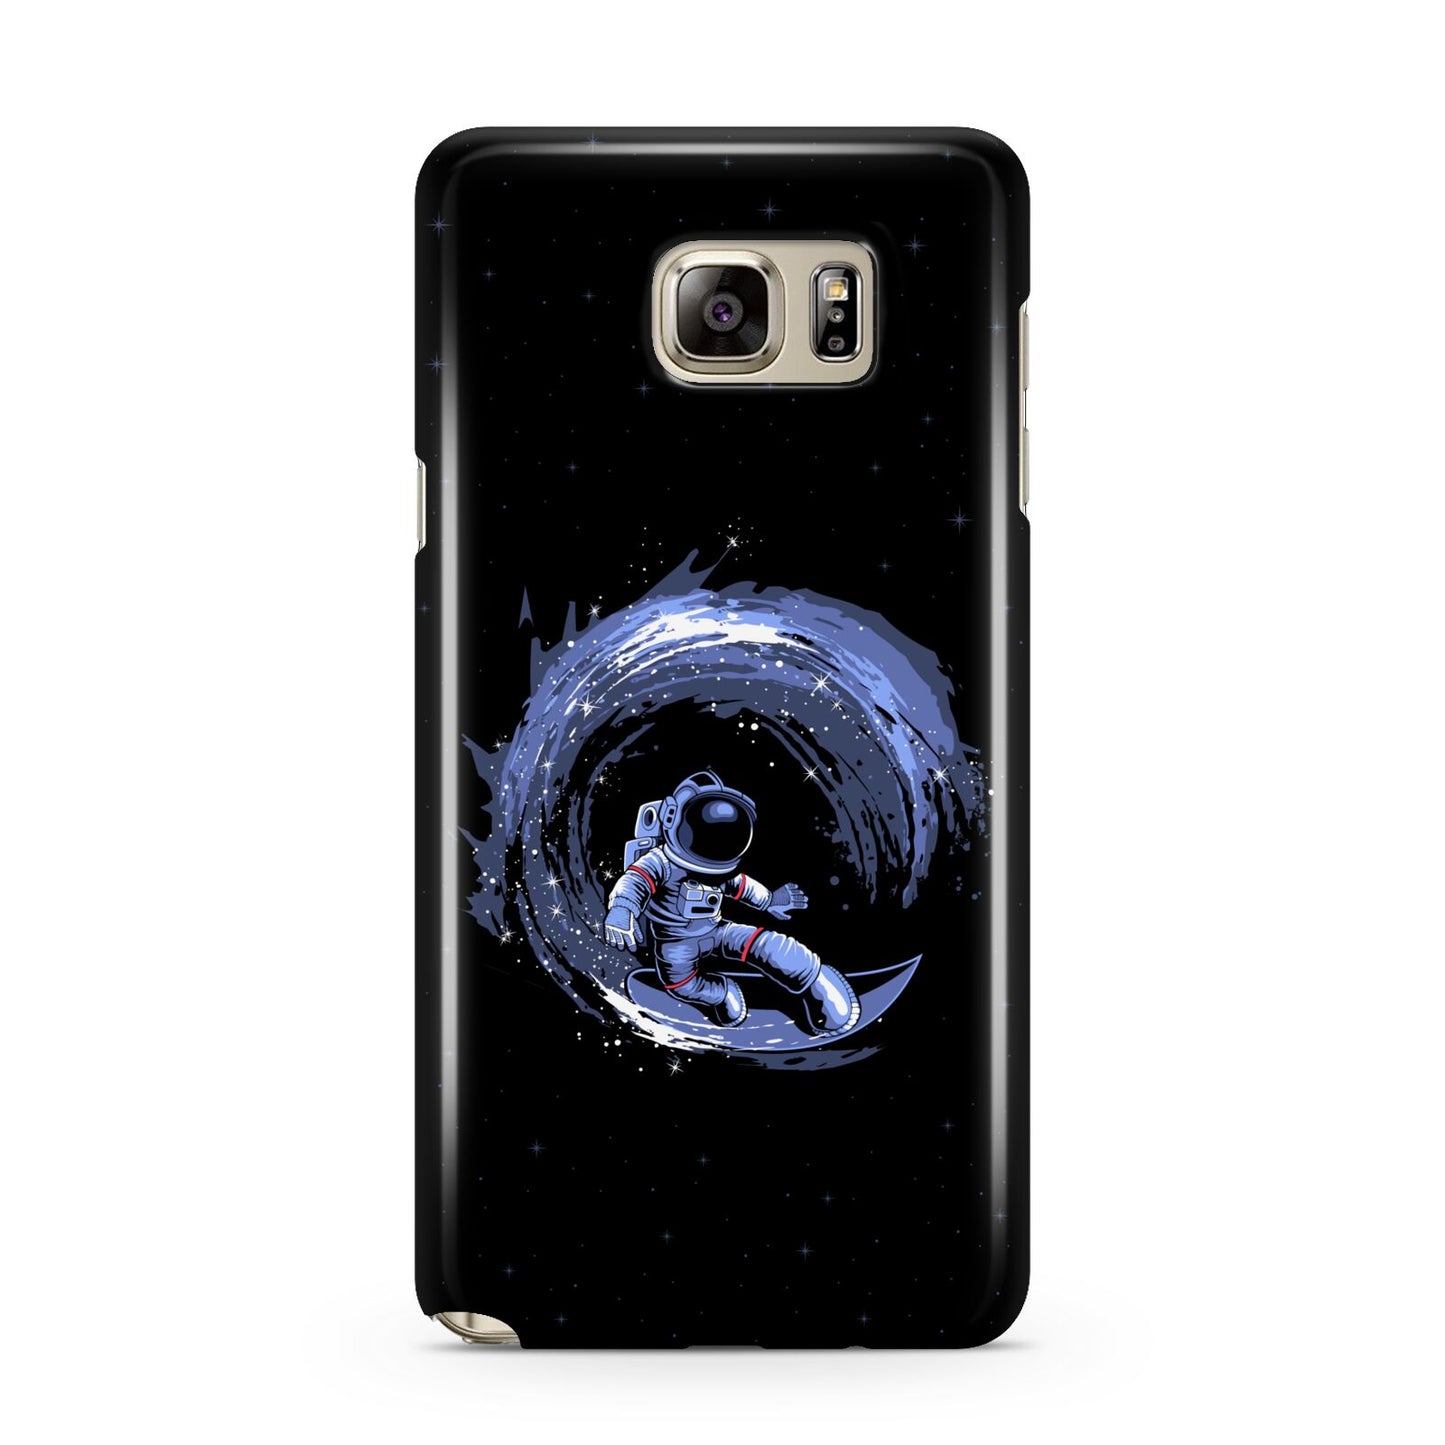 Surfing Astronaut Samsung Galaxy Note 5 Case